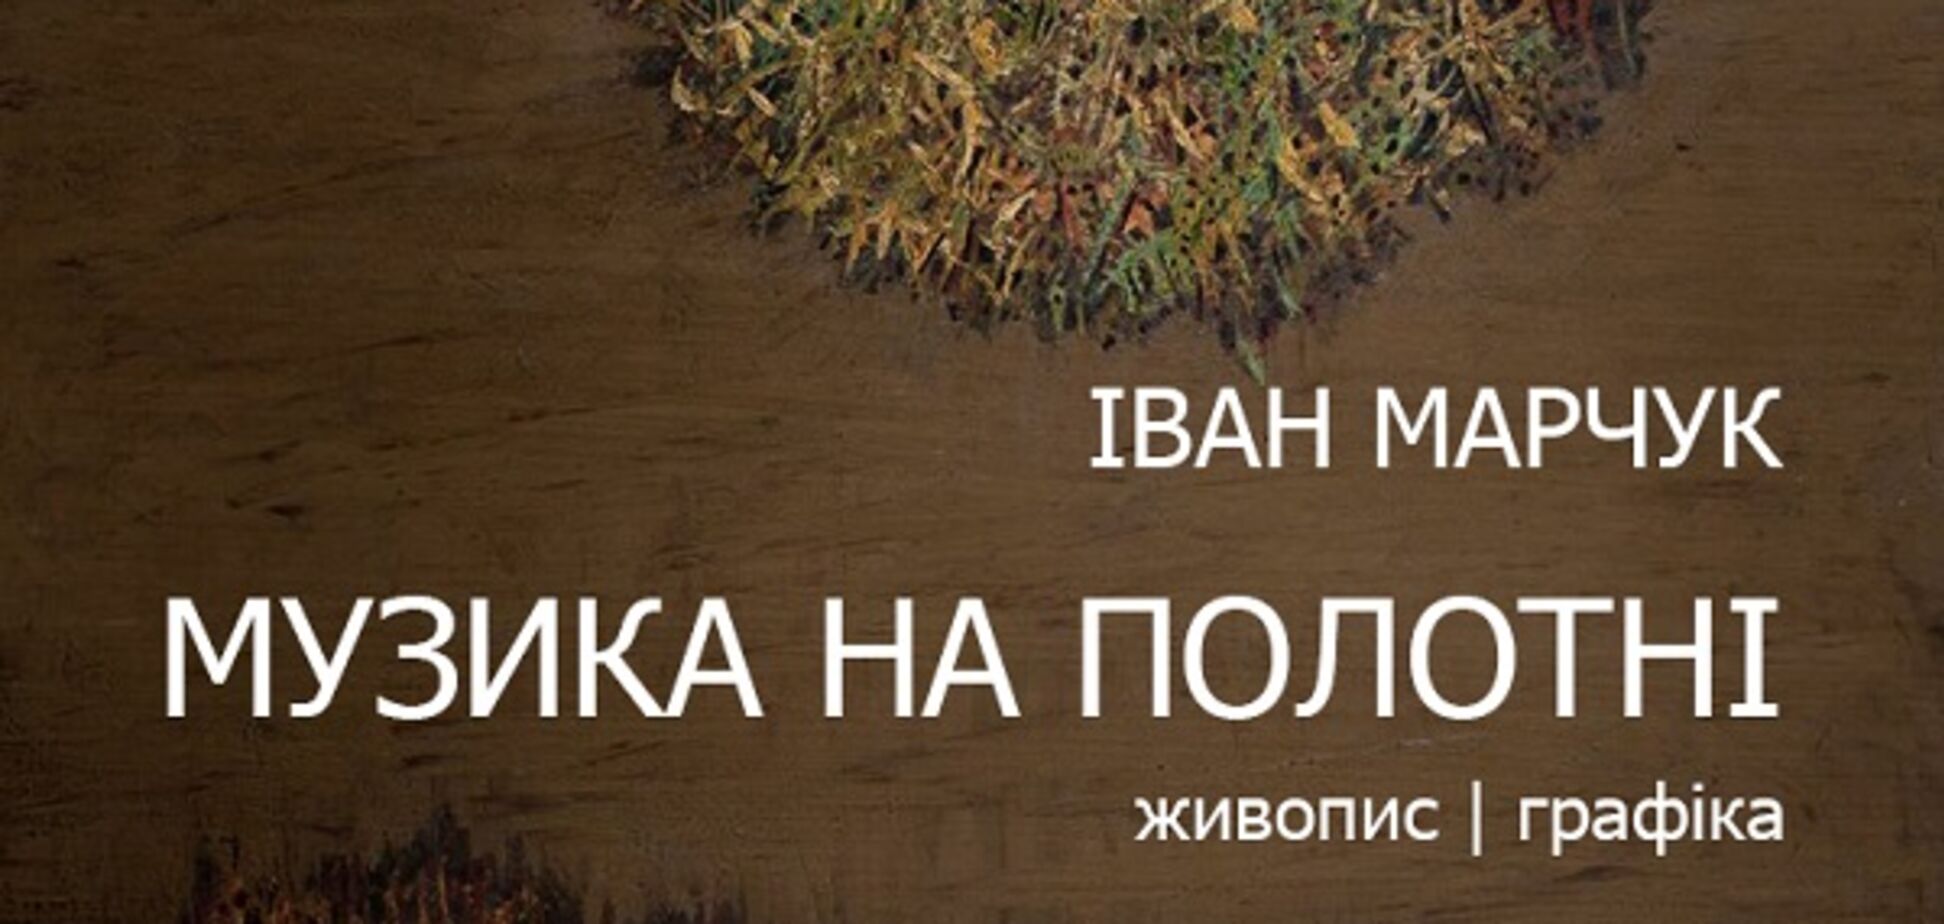 В Киеве состоится выставка работ Ивана Марчука 'Музыка на холсте'